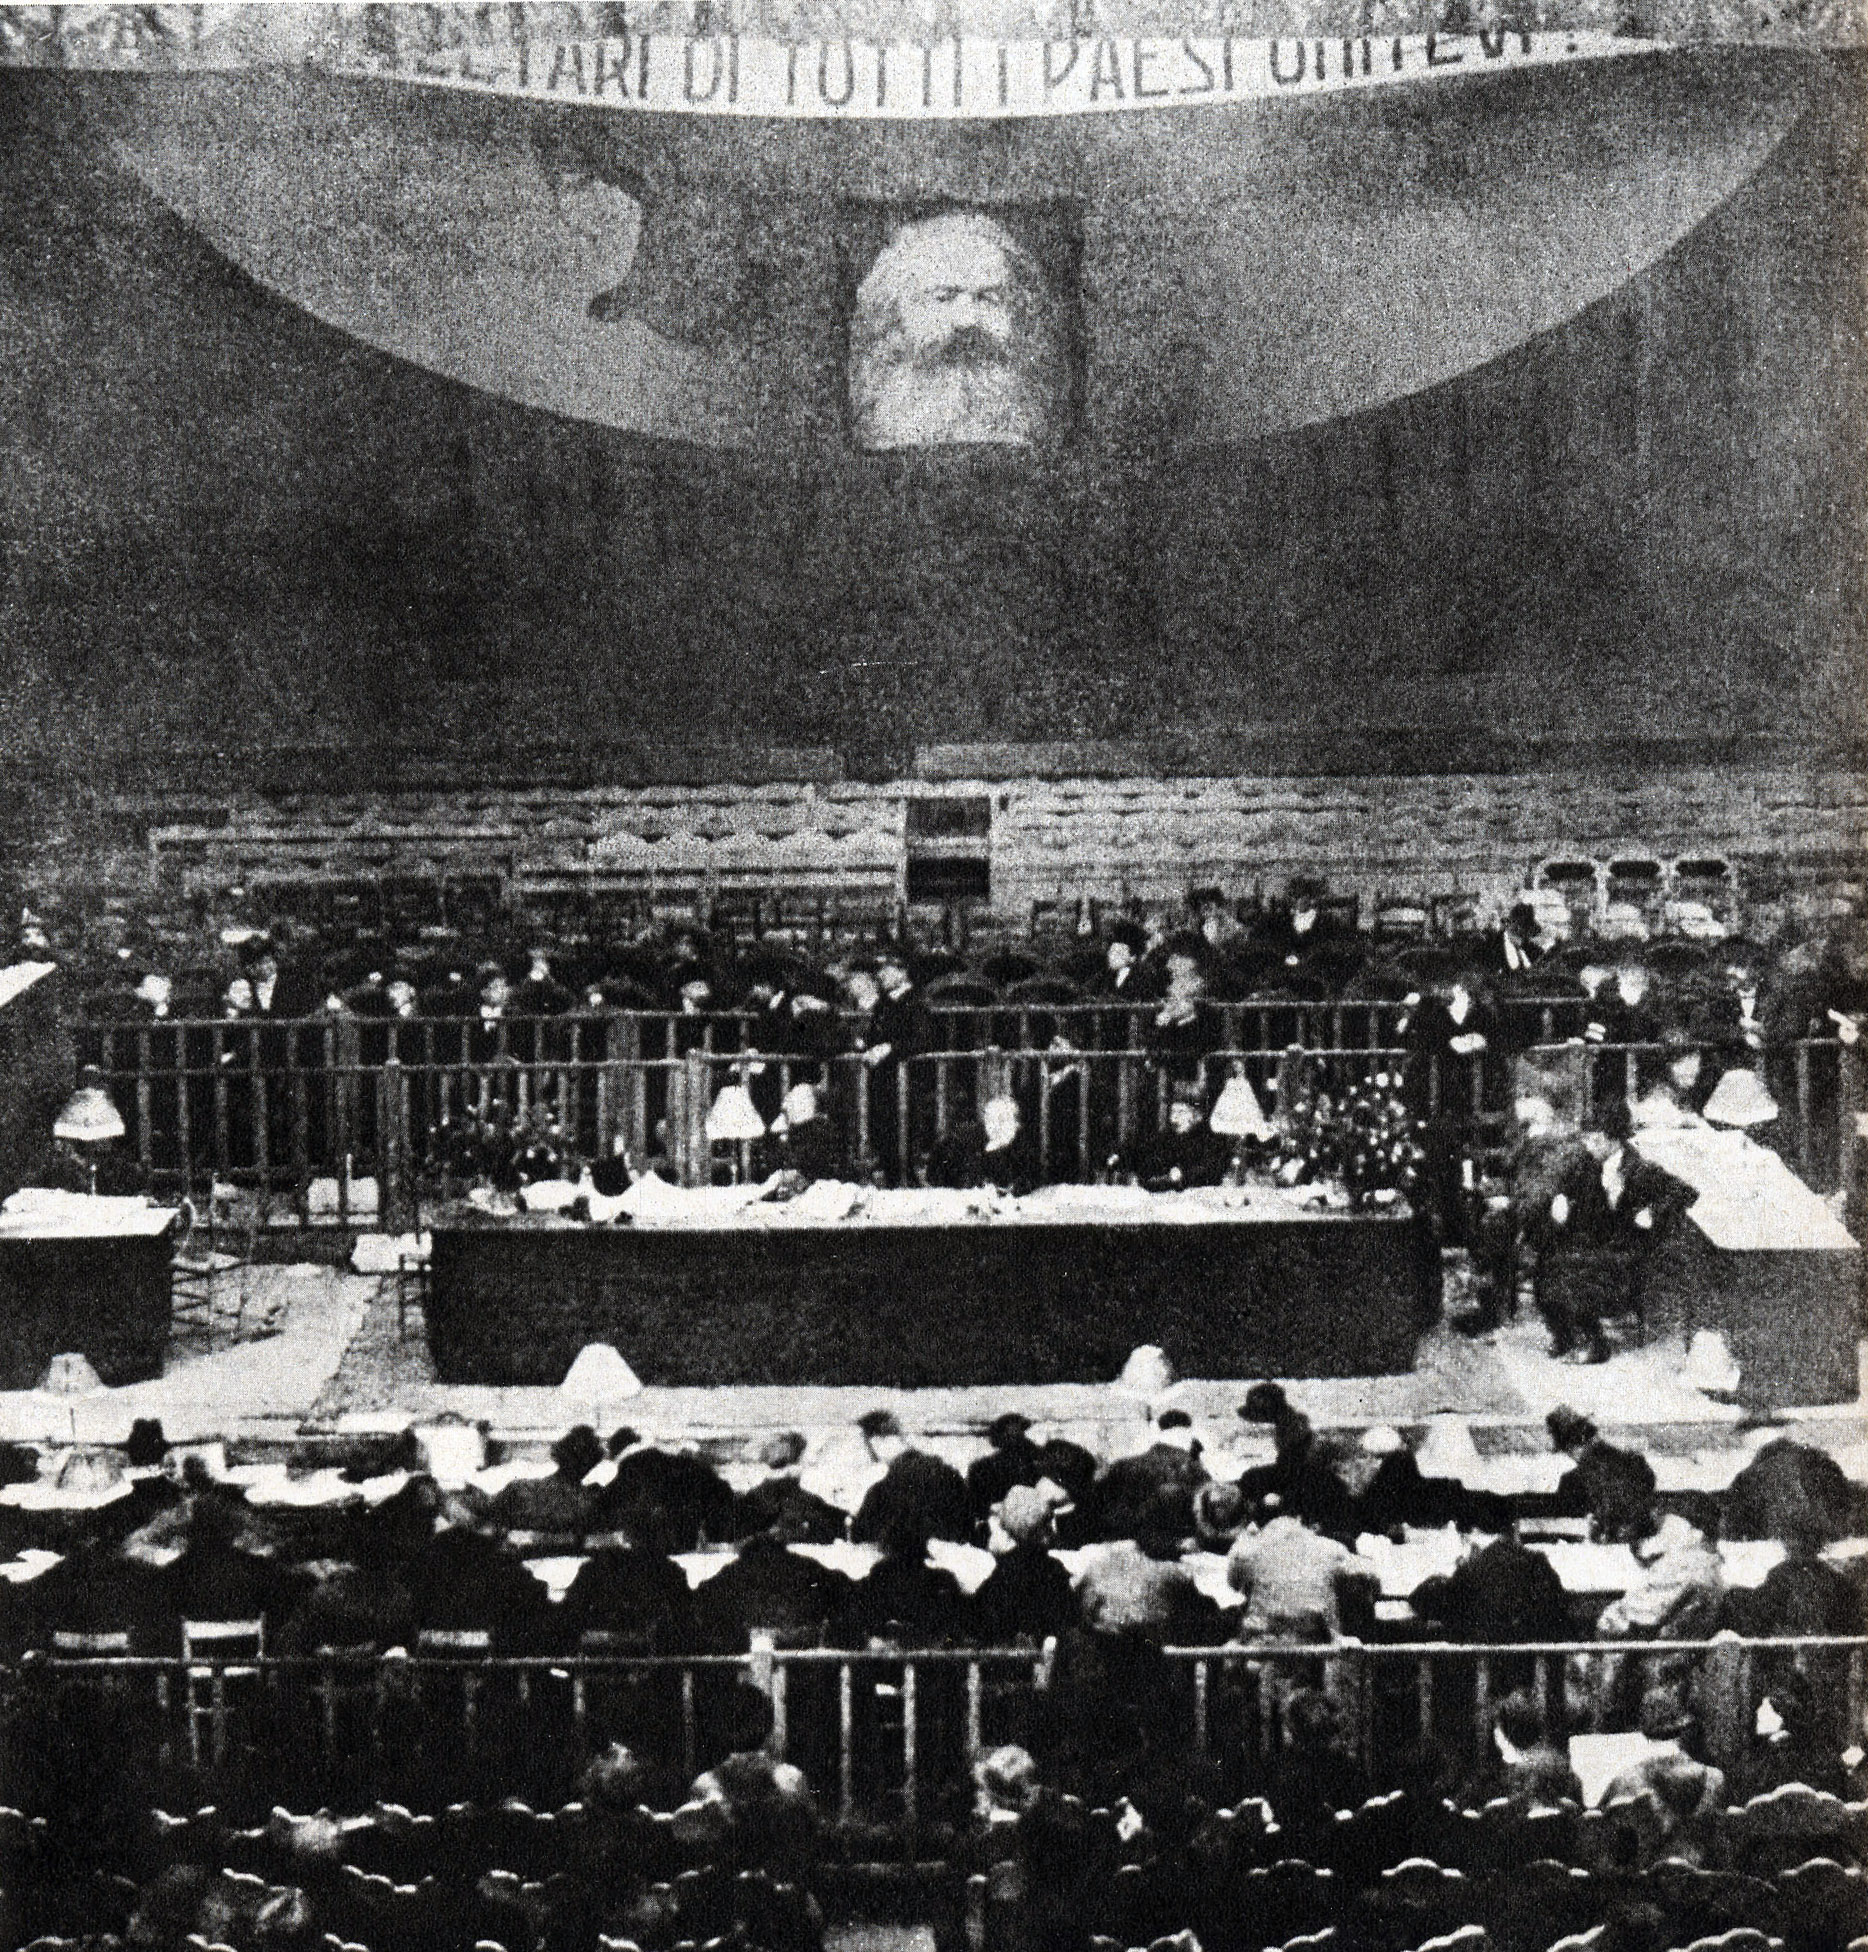 Il teatro Carlo Goldoni di Livorno dove si svolse il XVII Congresso del Partito Socialista, dal 15 al 21 gennaio 1921. Una foto dell'interno del teatro durante i lavori congressuali